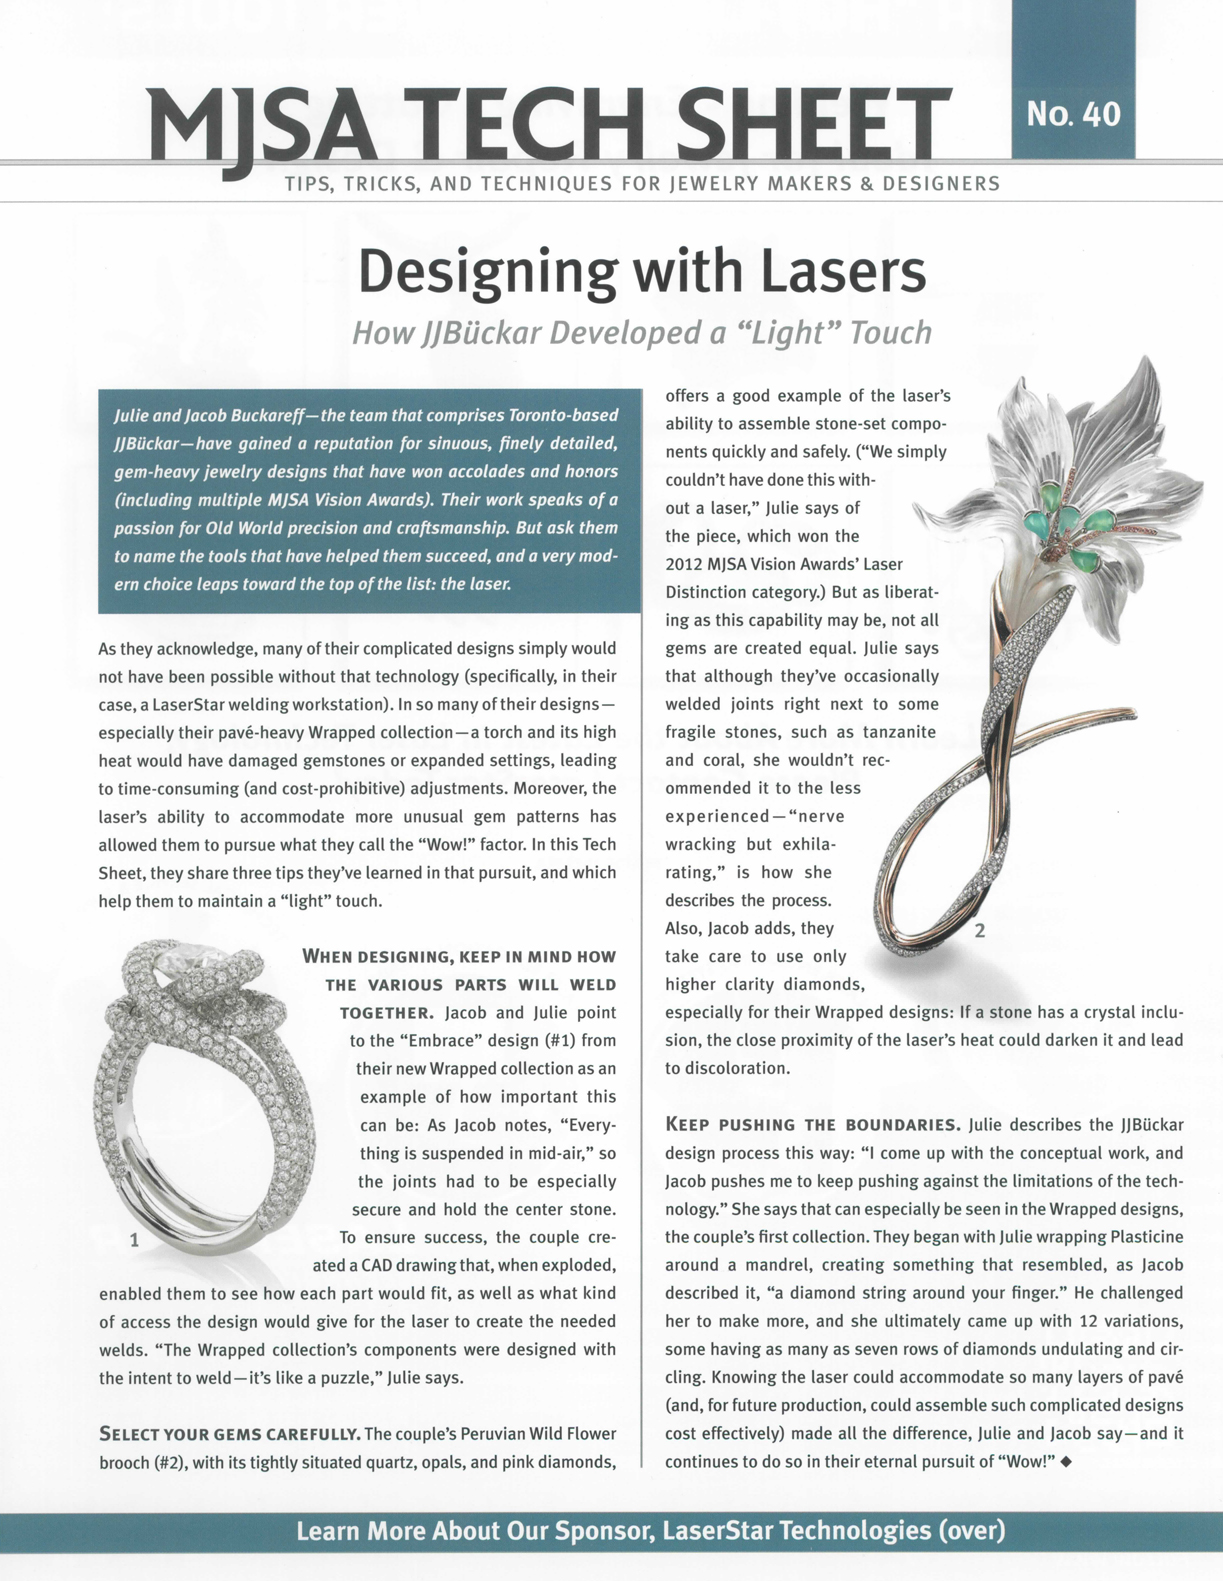 MJSA Journal, Tech Sheet 8/2014